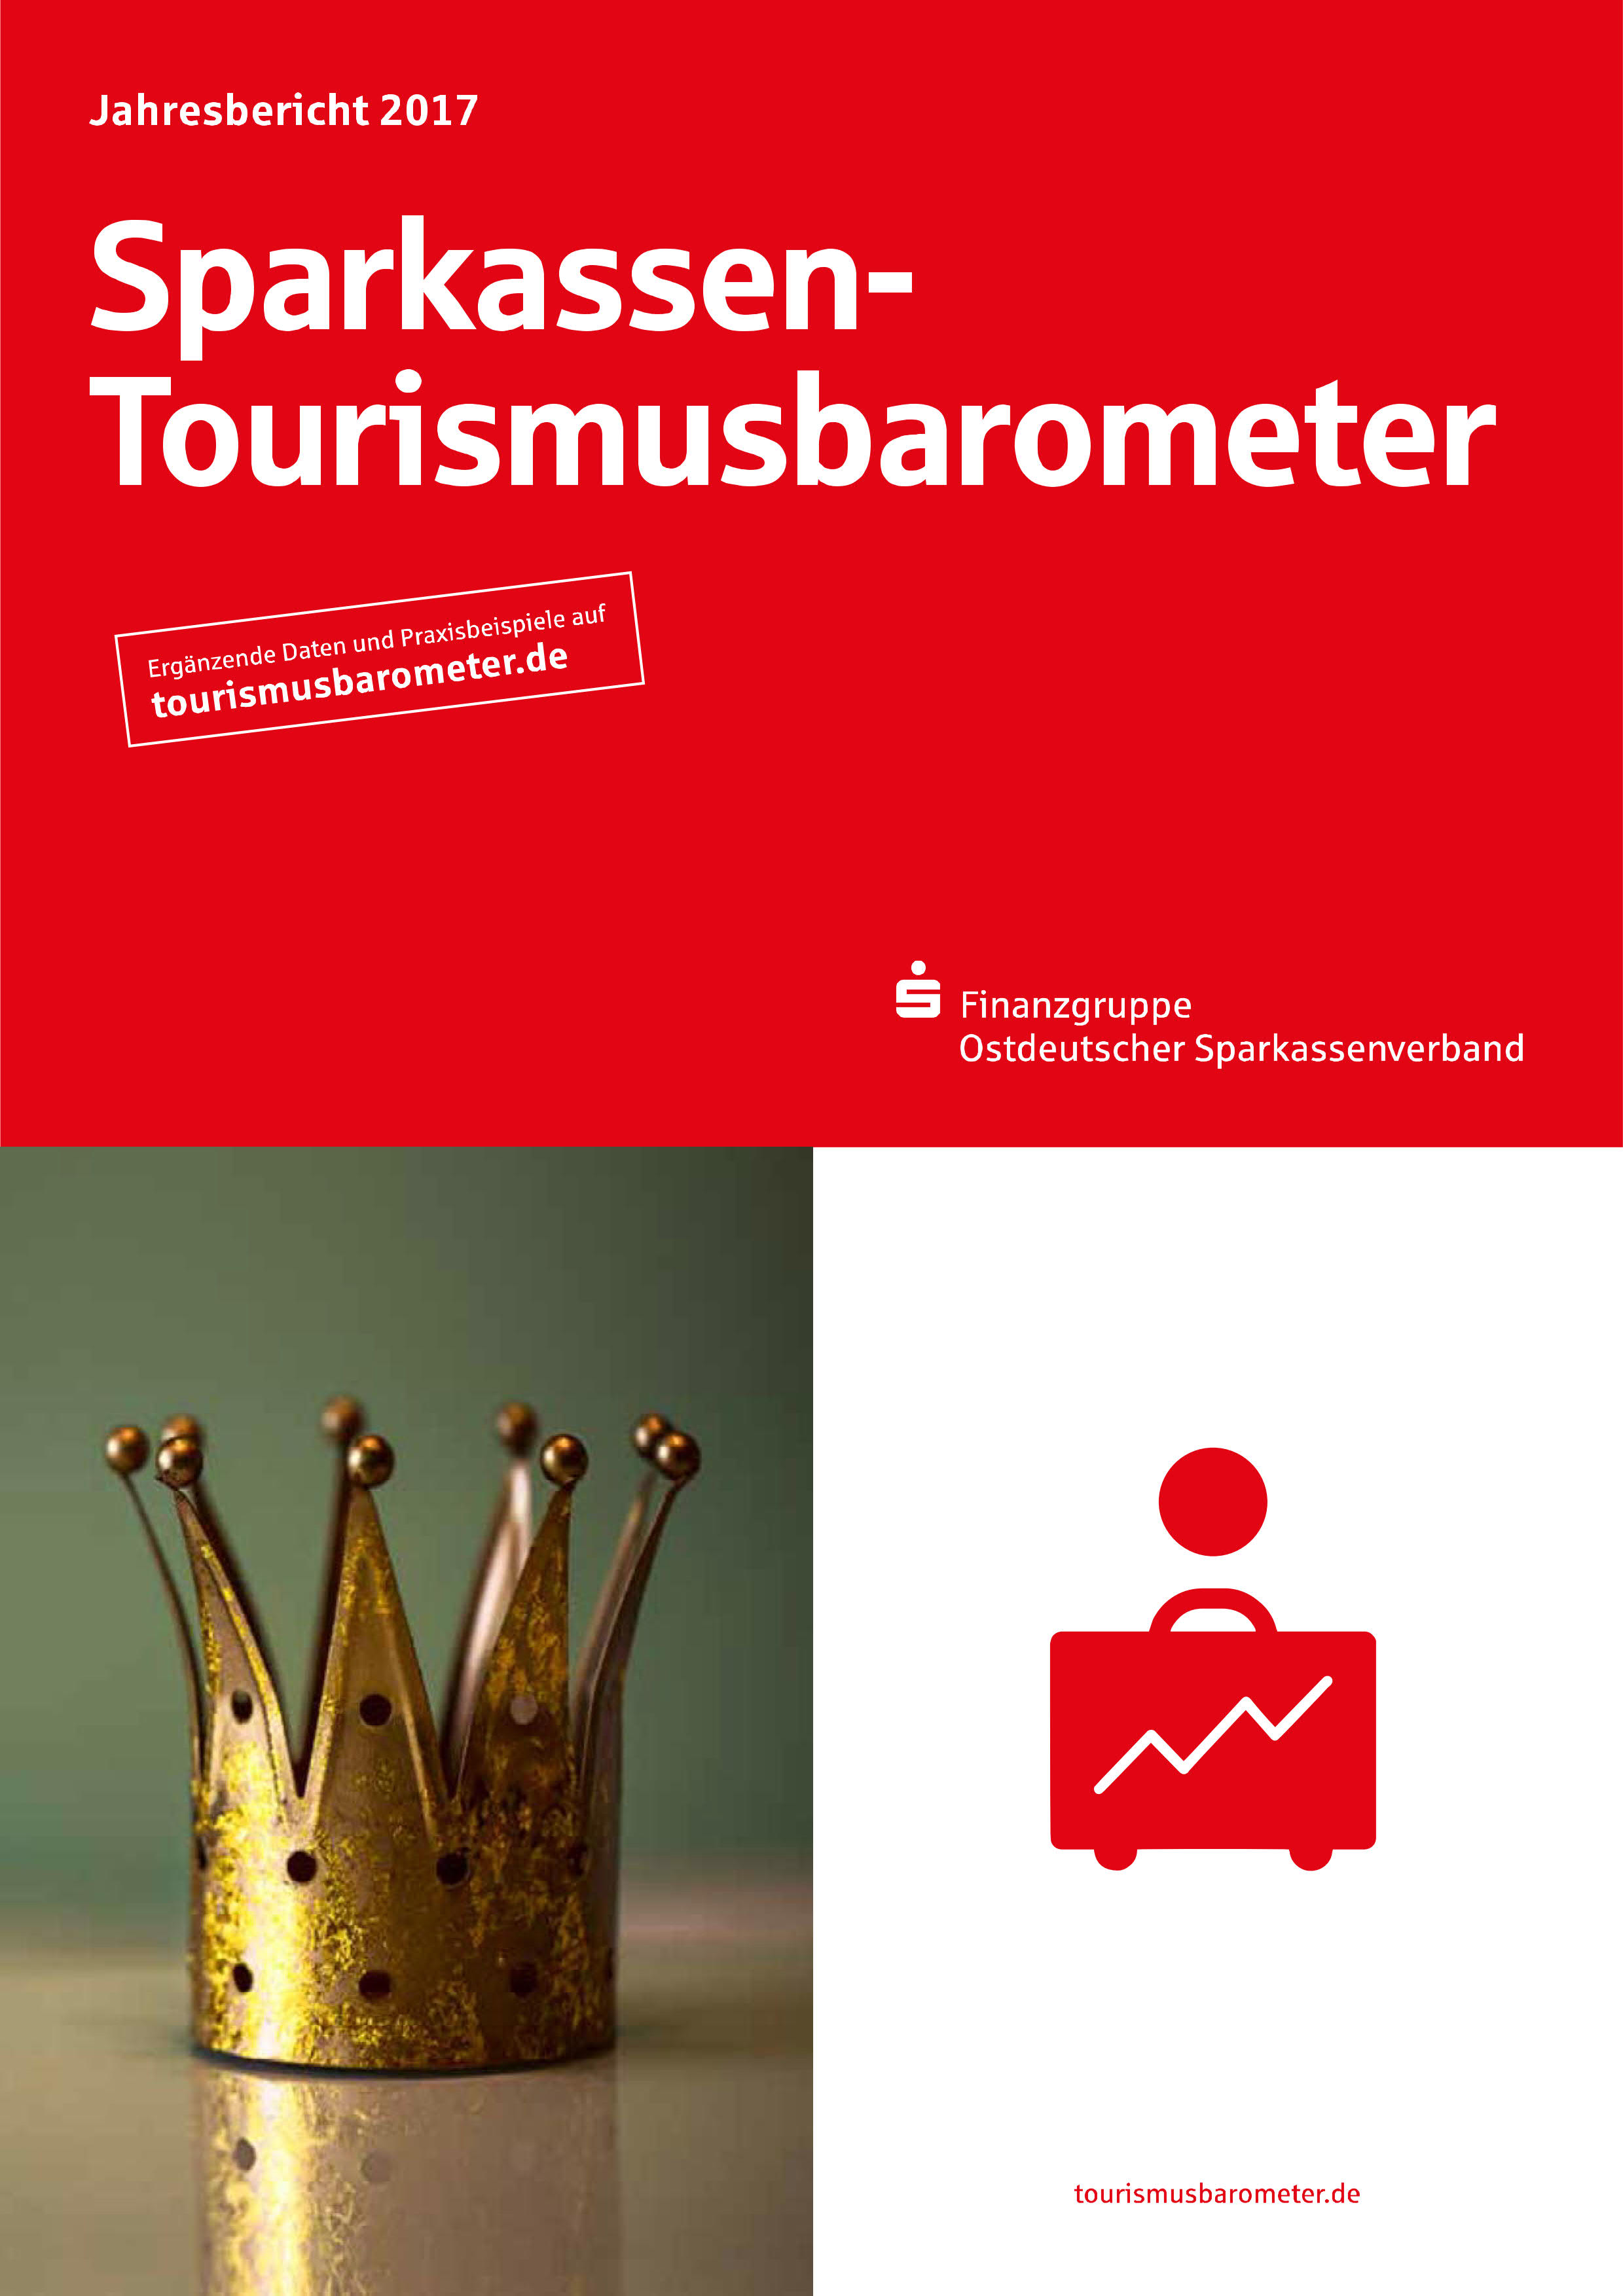 Qualitätsmanagement im Sparkassen-Tourismusbarometer 